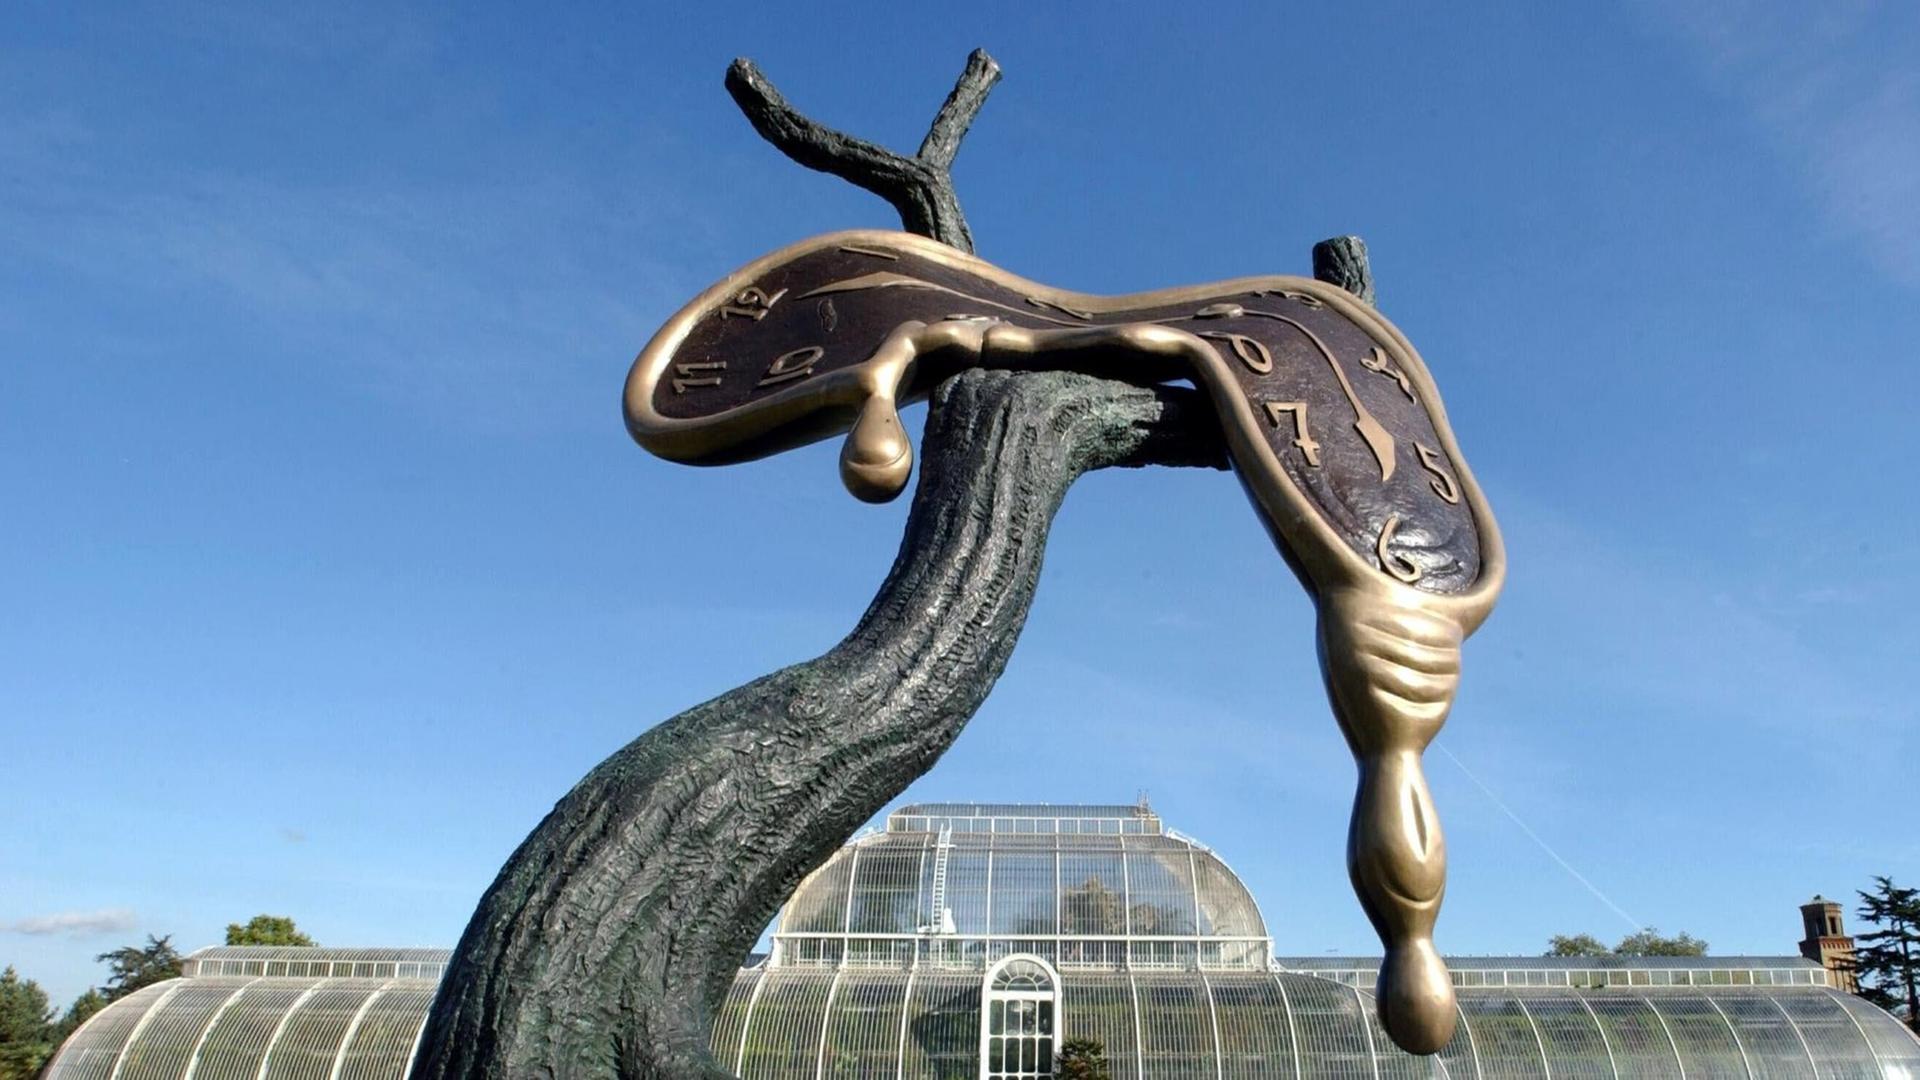 Das Foto zeigt ein Exemplar der Bronzeskulptur "Profil der Zeit" von Salvador Dalí. Eine schmelzend dargestellte Uhr scheint dabei von den Ästen eines Baumes zu laufen.